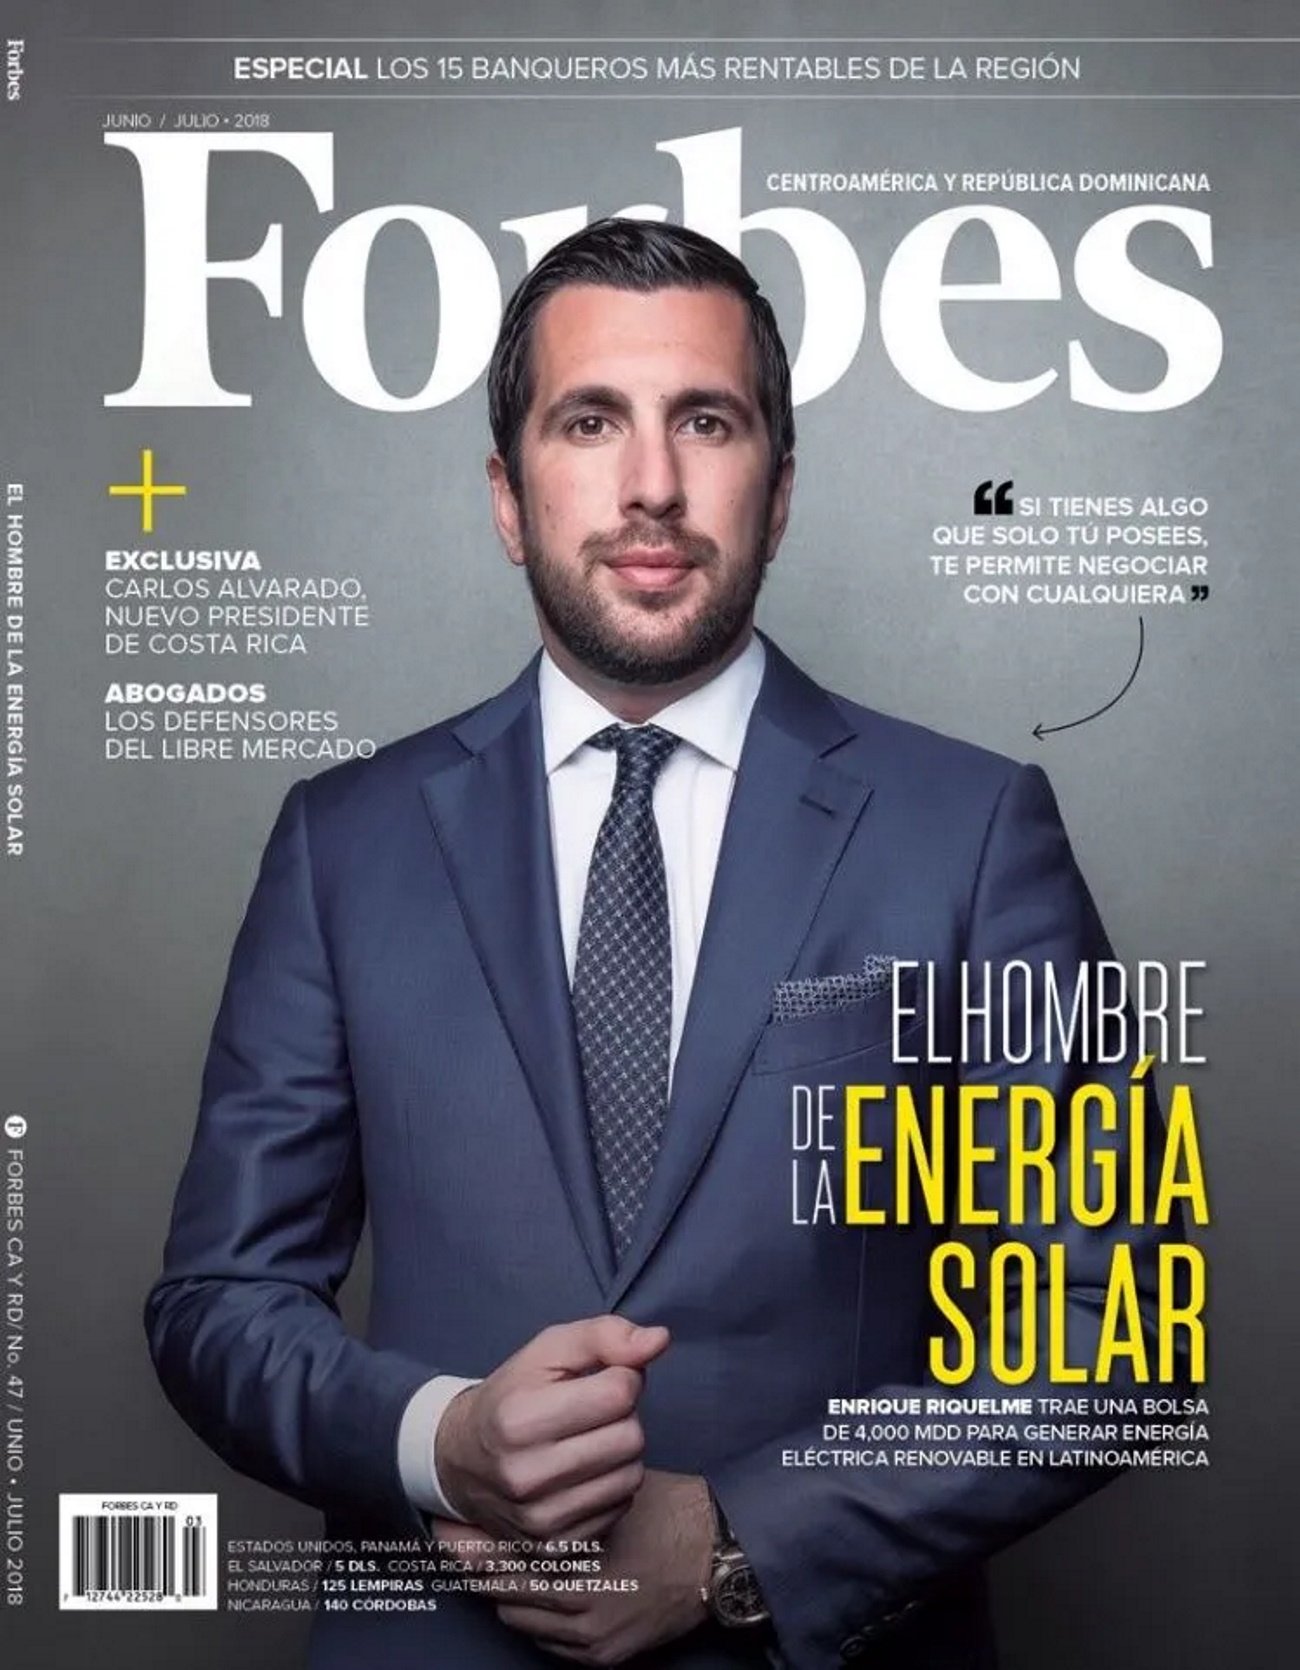 Enrique Riquelme Forbes Centroamérica y República Dominicana